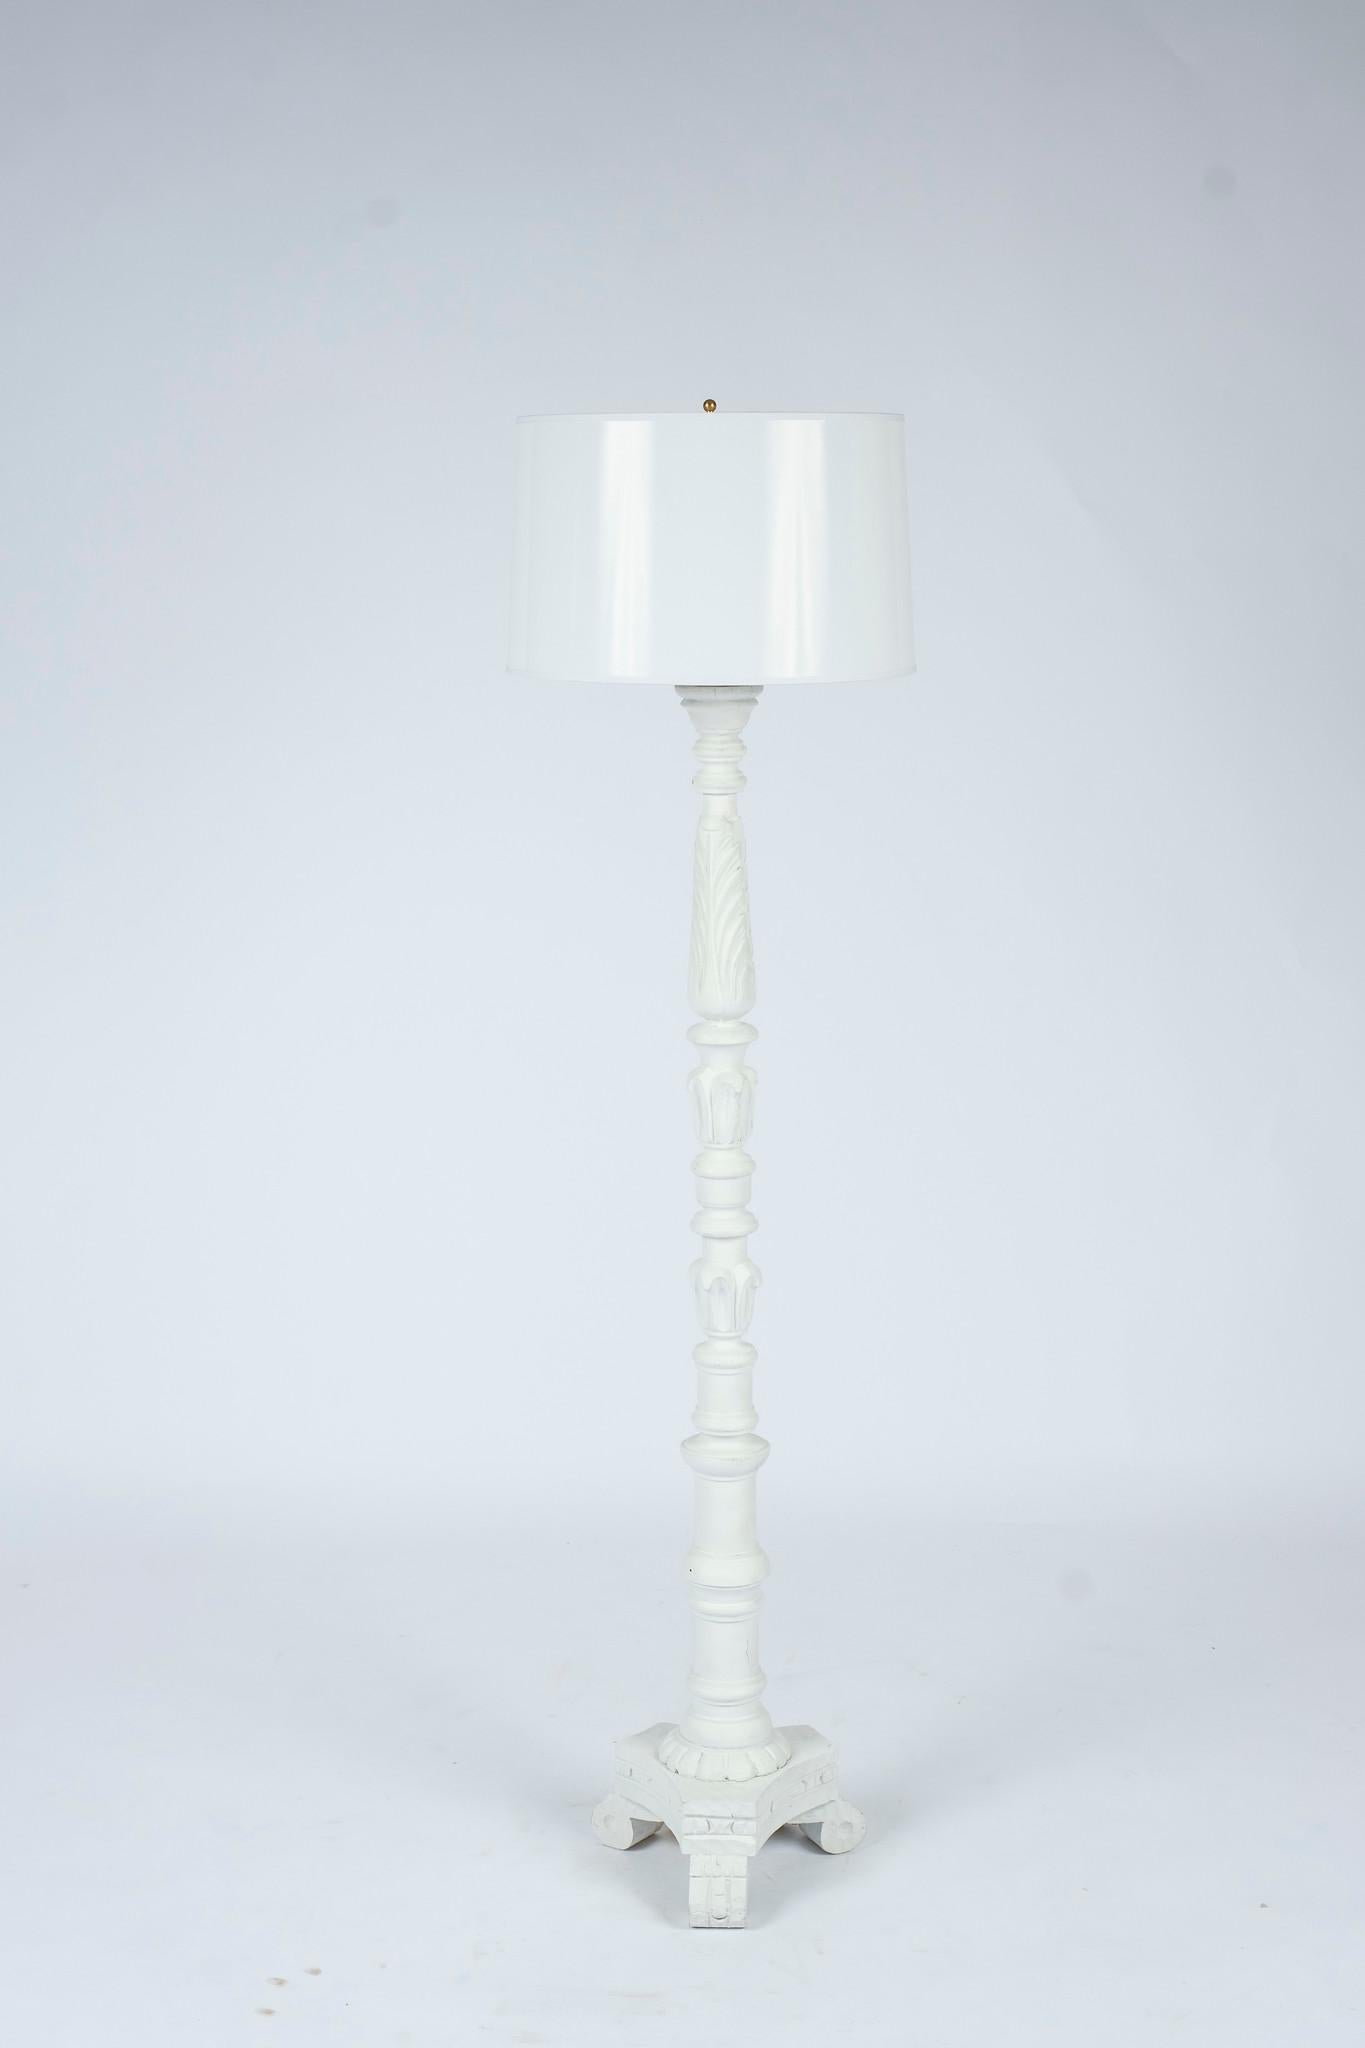 Vintage Italian gessoed geschnitzt Stehlampen neu lackiert weiß im Stil von Serge Roche gezeigt mit 16 